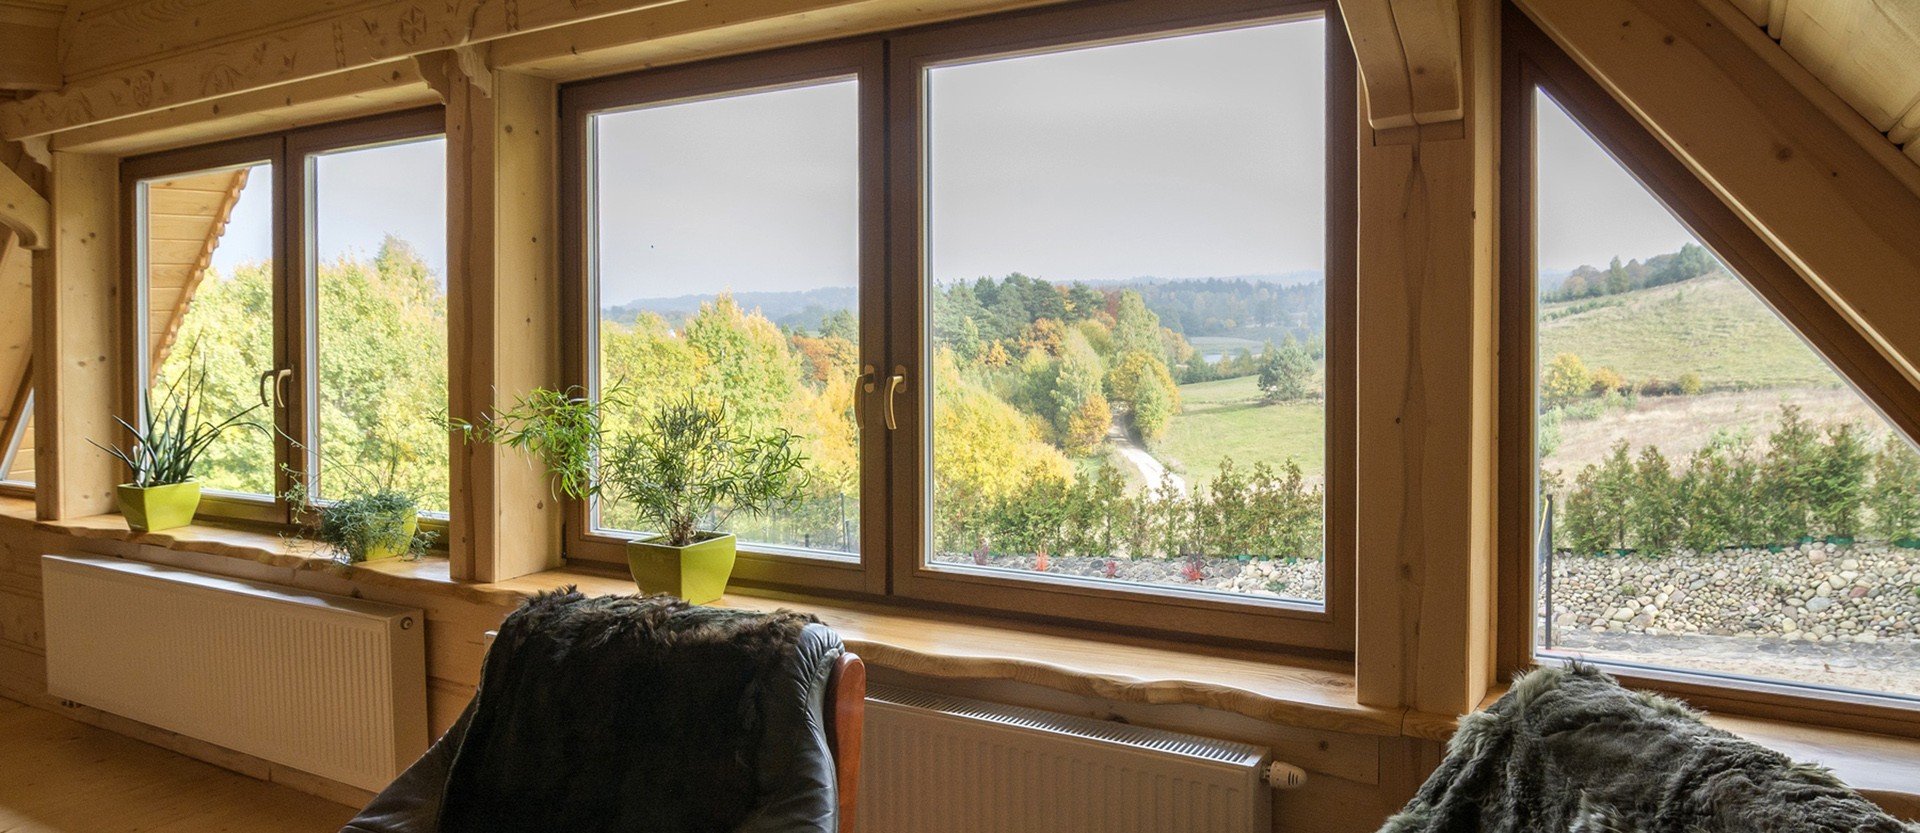 Der Herbst kommt – Zeit für die Wartung und Regulierung der Fenster!